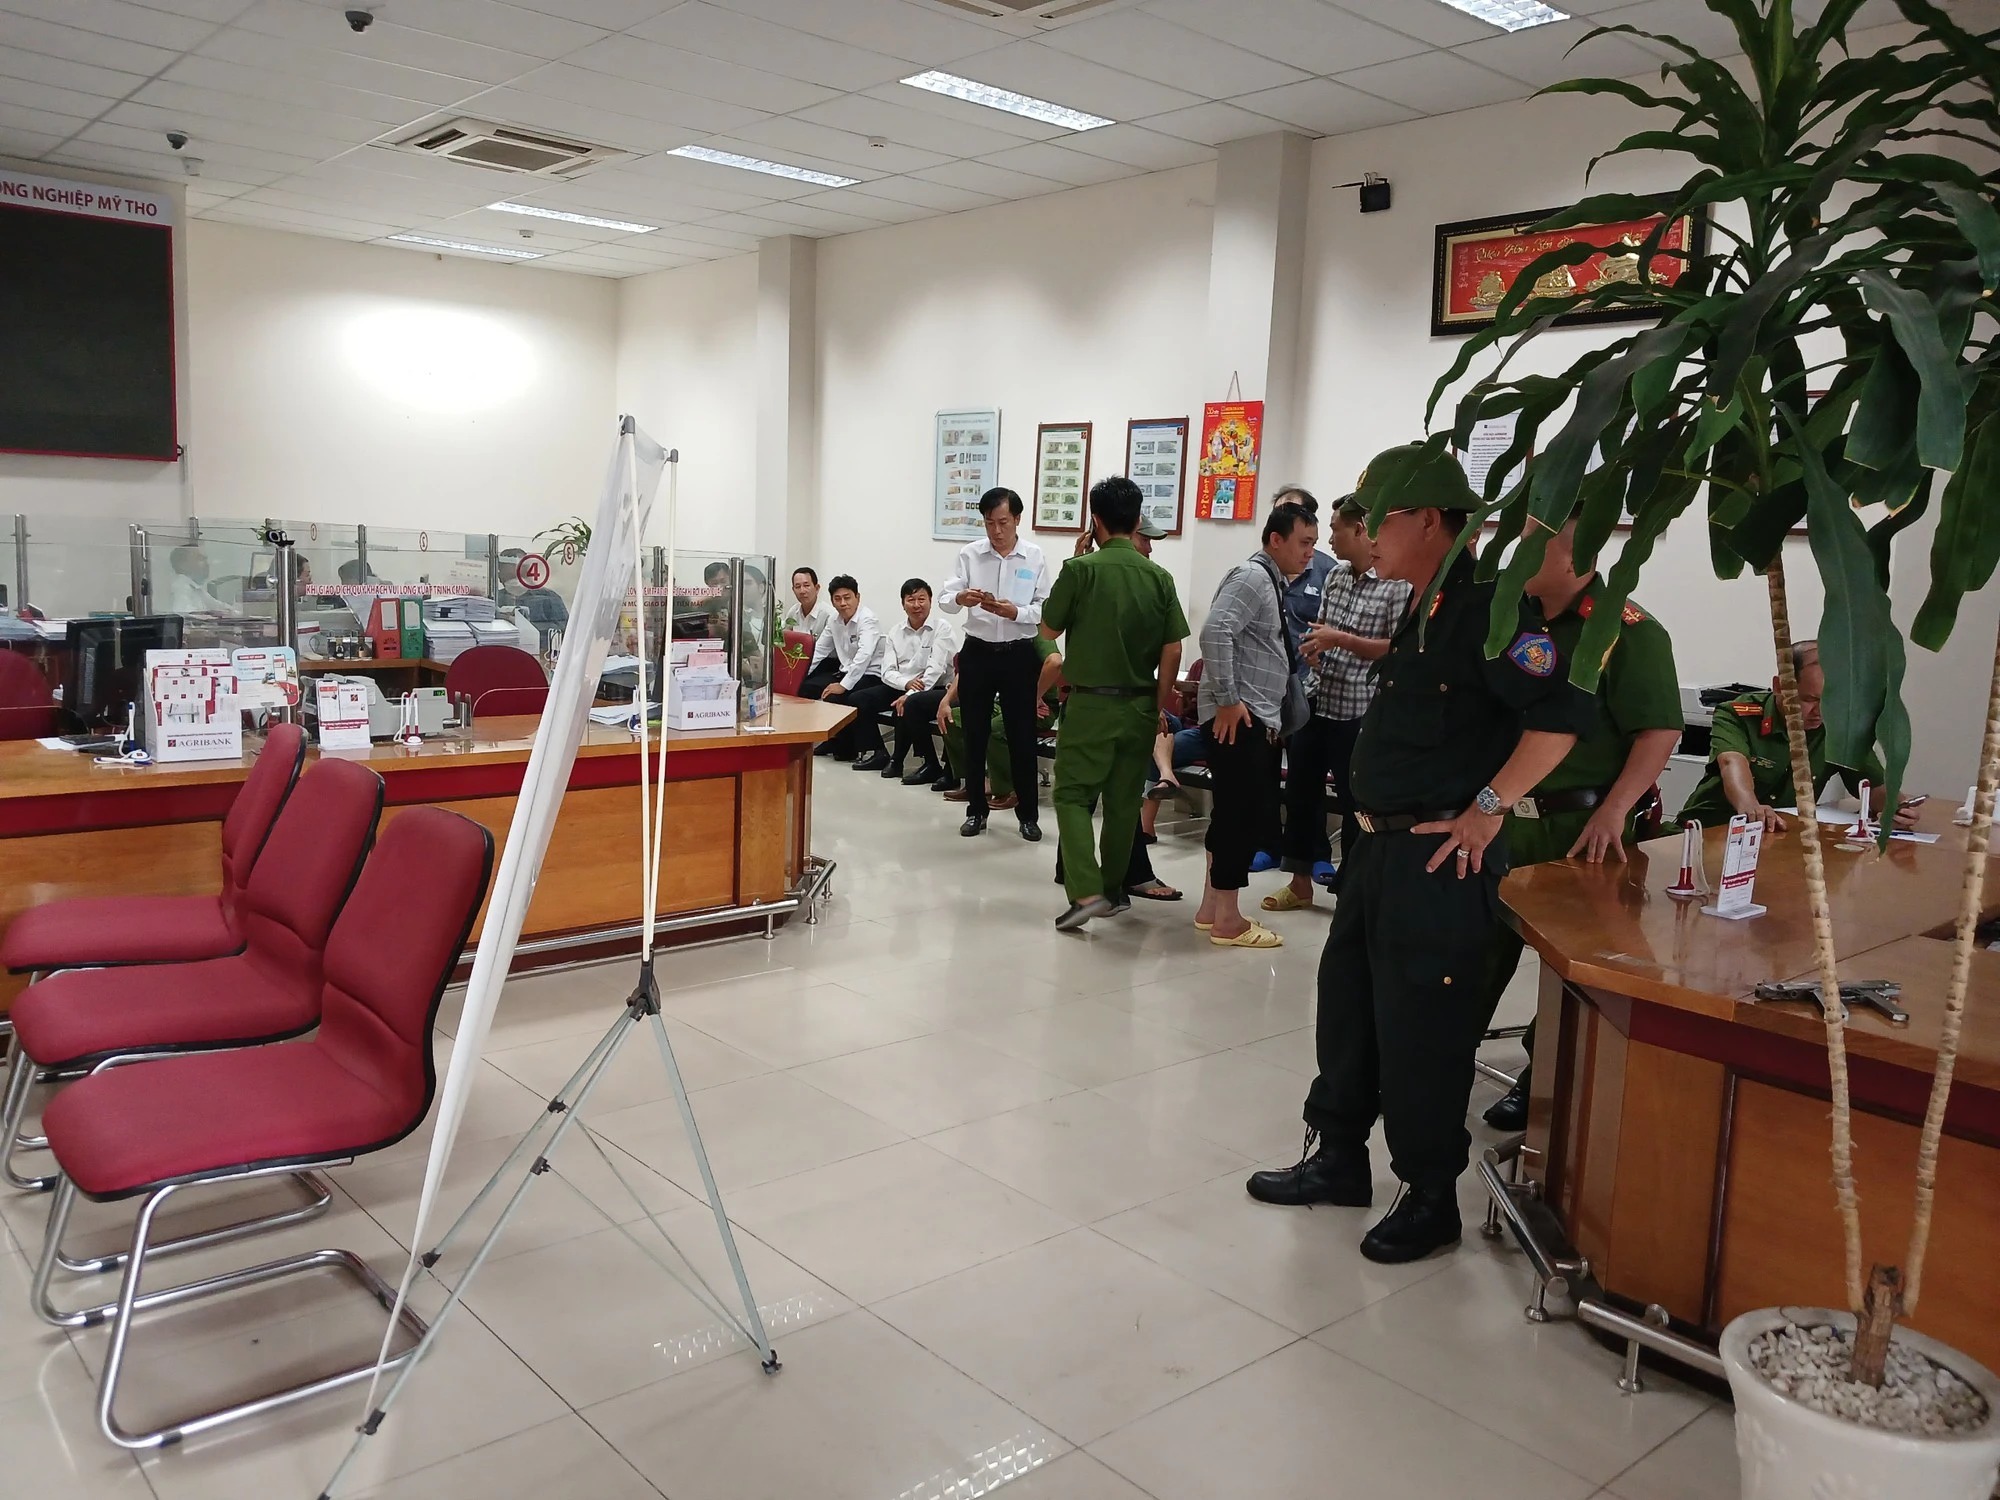 An ninh - Hình sự - Truy bắt đối tượng mang vật giống súng đi cướp ngân hàng ở Tiền Giang (Hình 2).